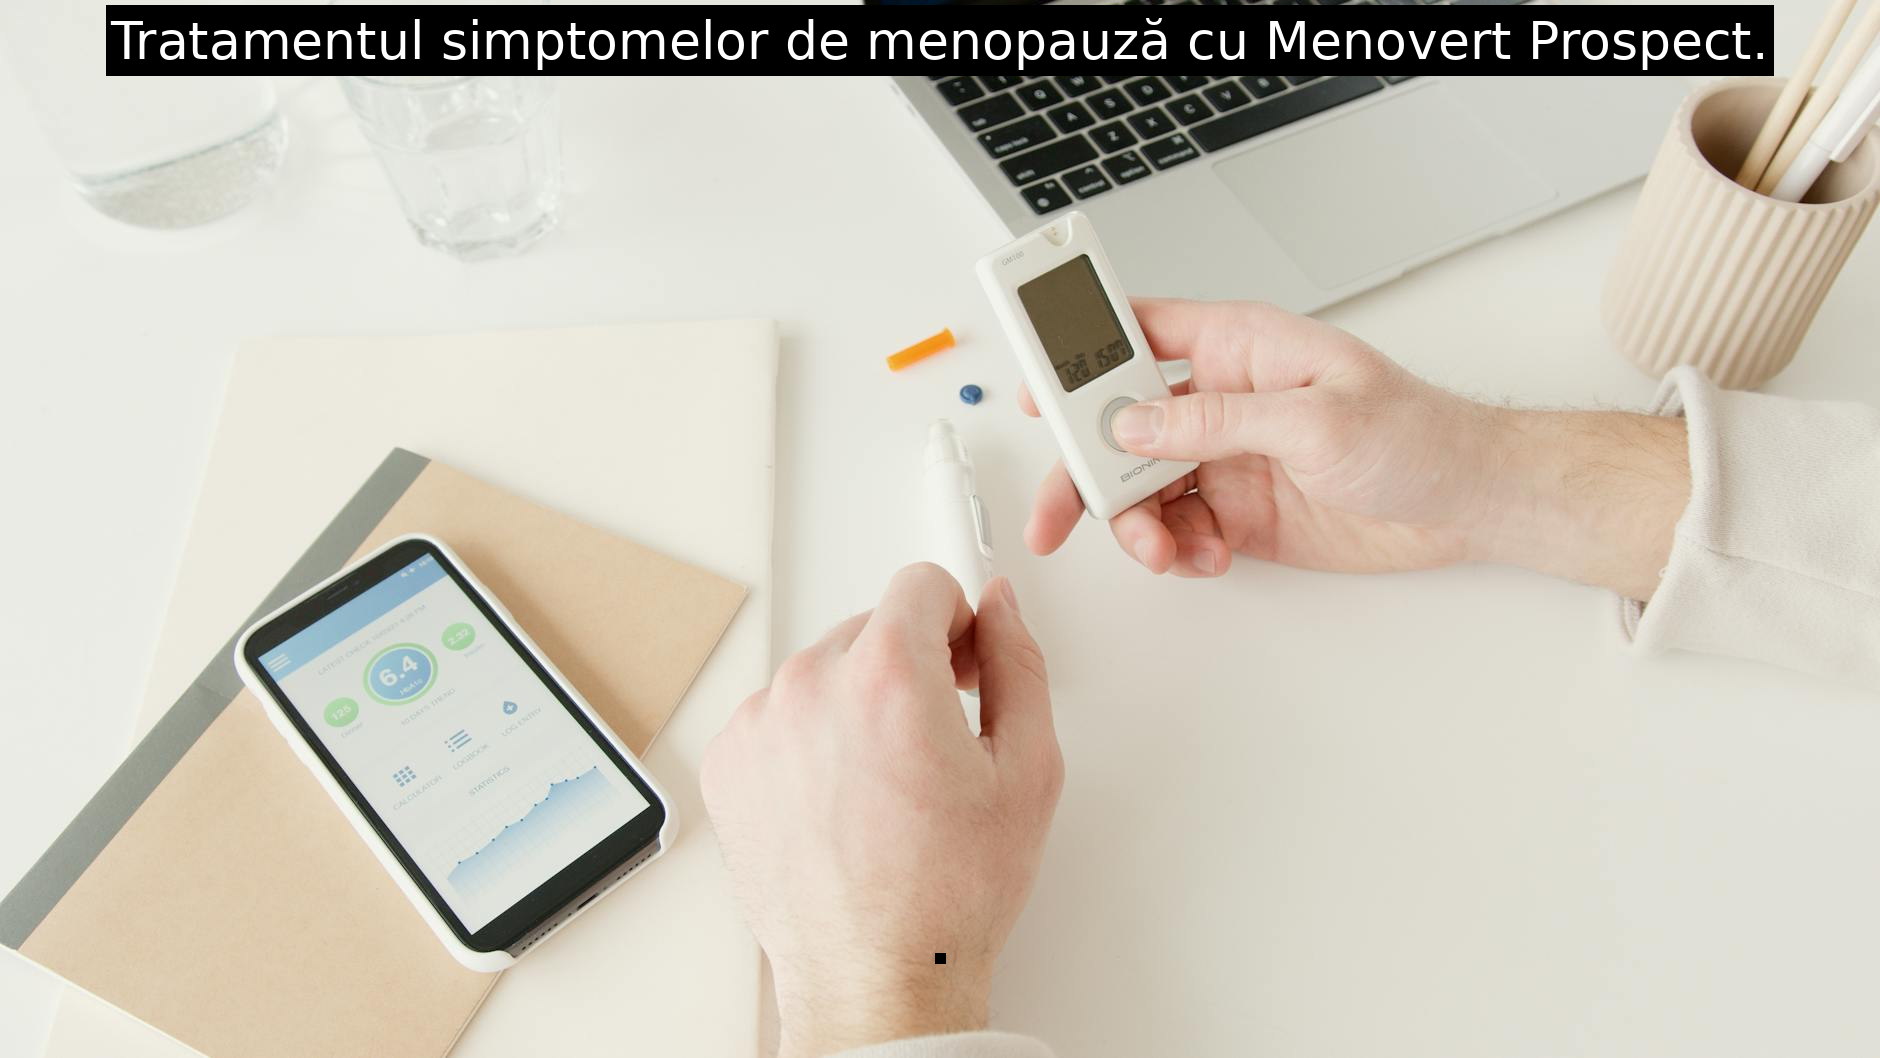 Tratamentul simptomelor de menopauză cu Menovert Prospect.